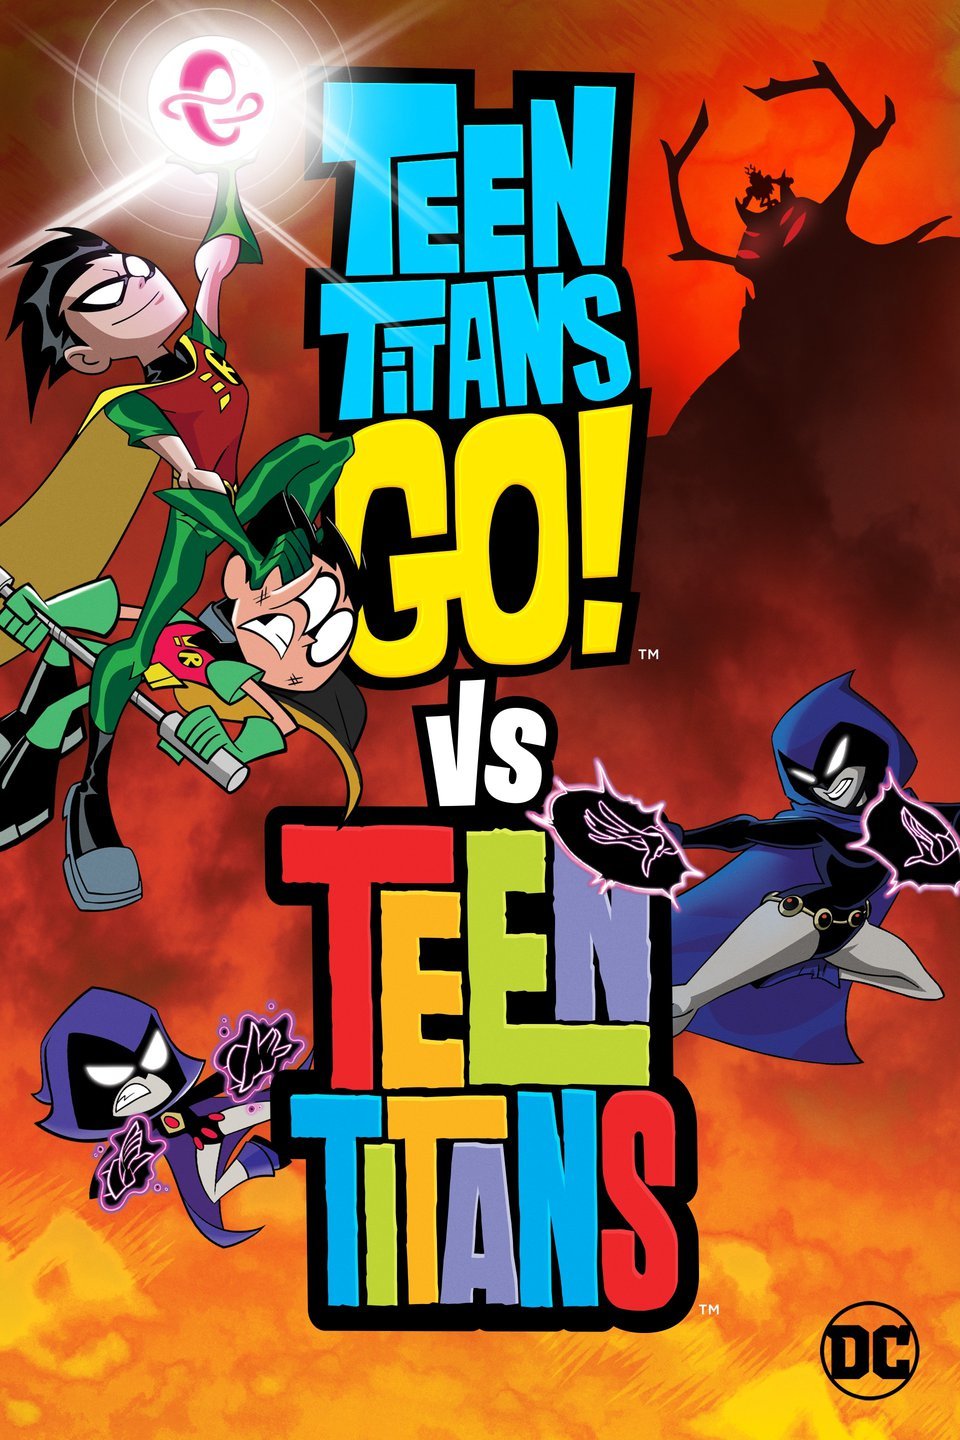 Teen Titans Go vs Teen Titans 2019